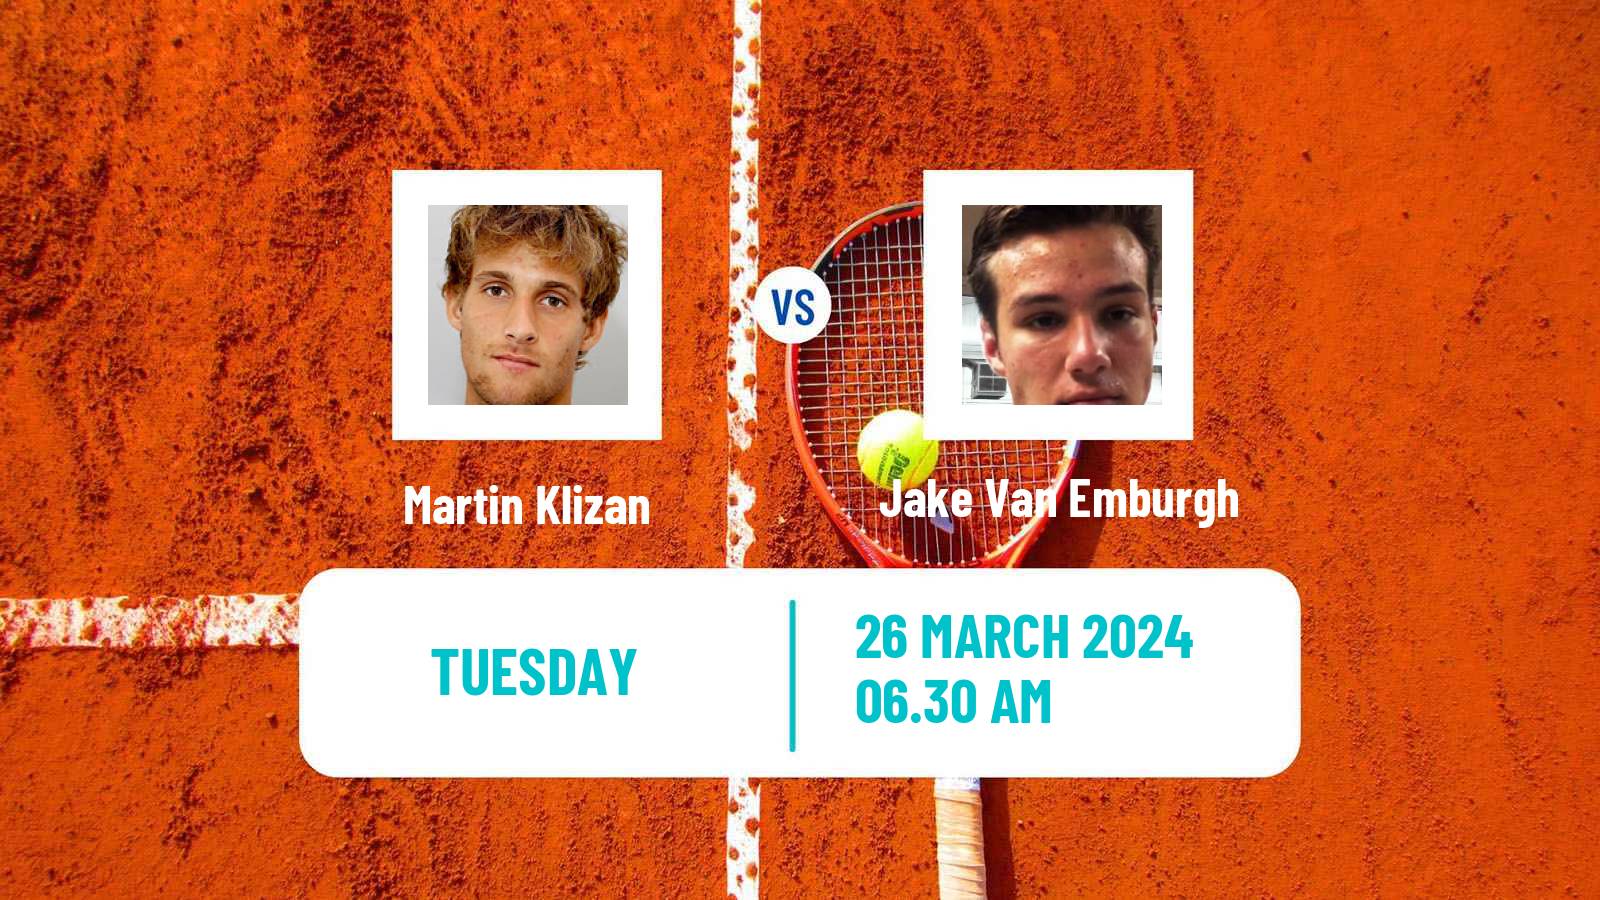 Tennis ITF M15 Heraklion 4 Men Martin Klizan - Jake Van Emburgh